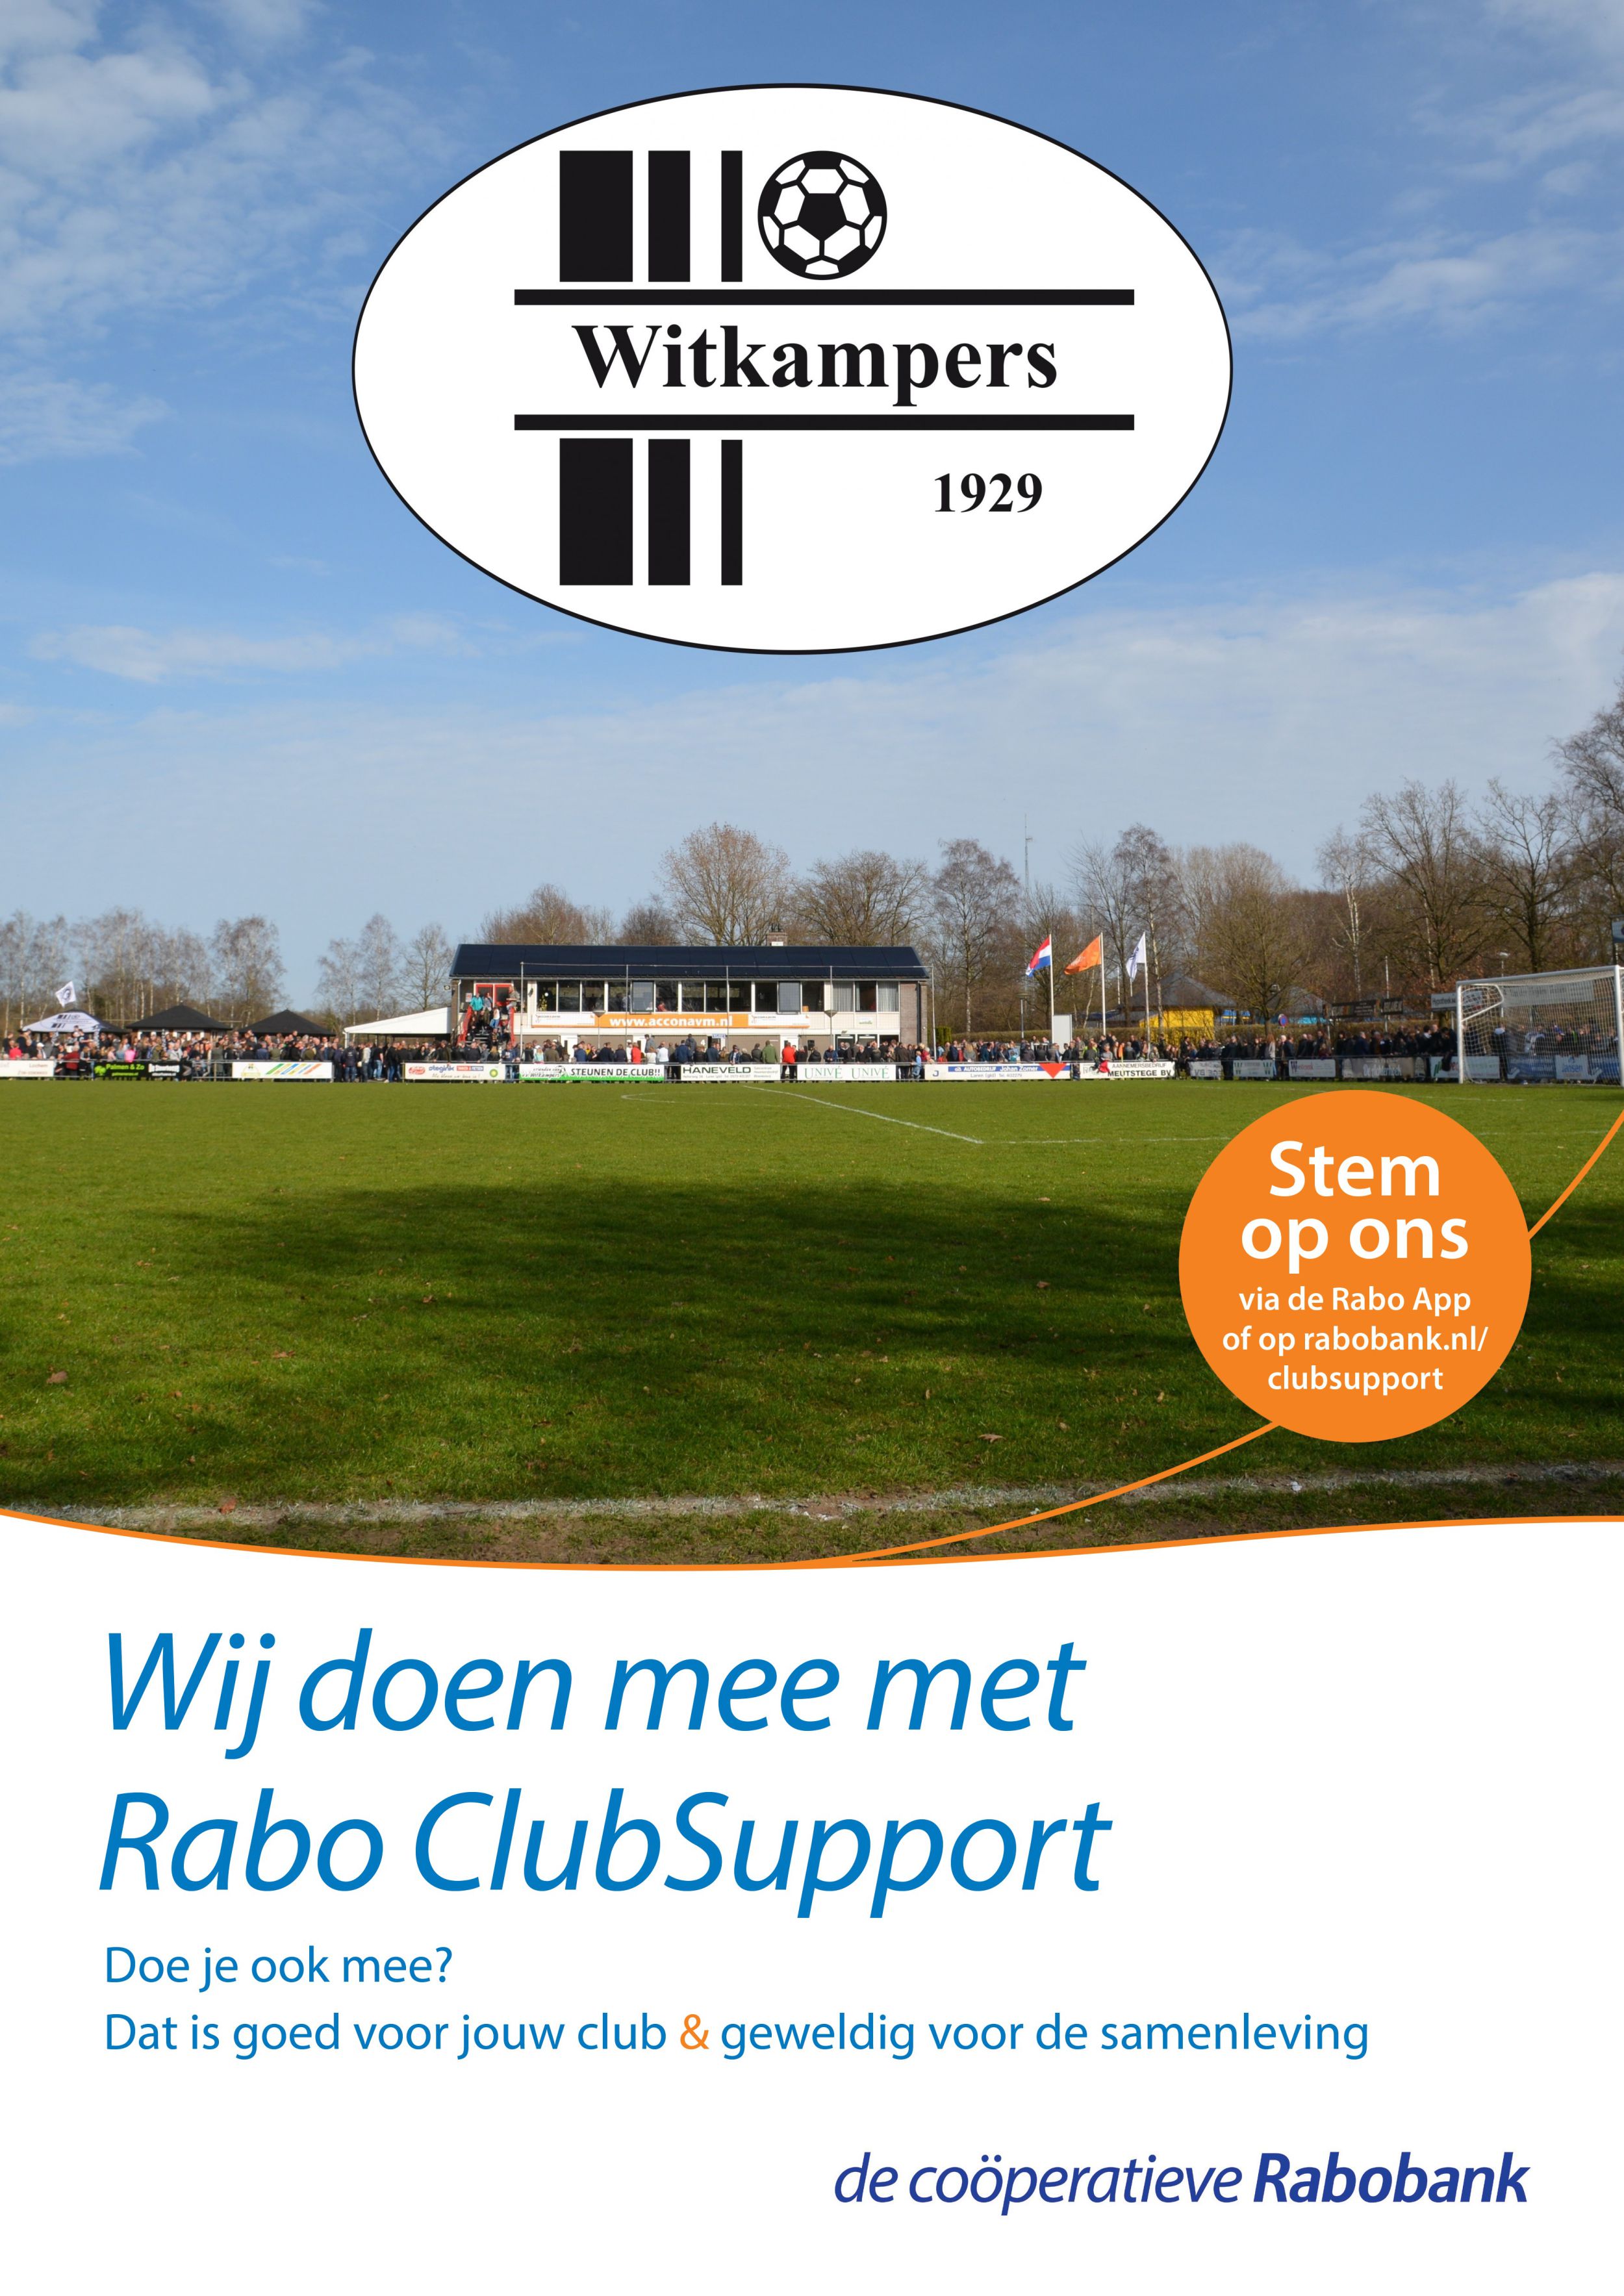 Rabo ClubSupport - Stem op VV Witkampers